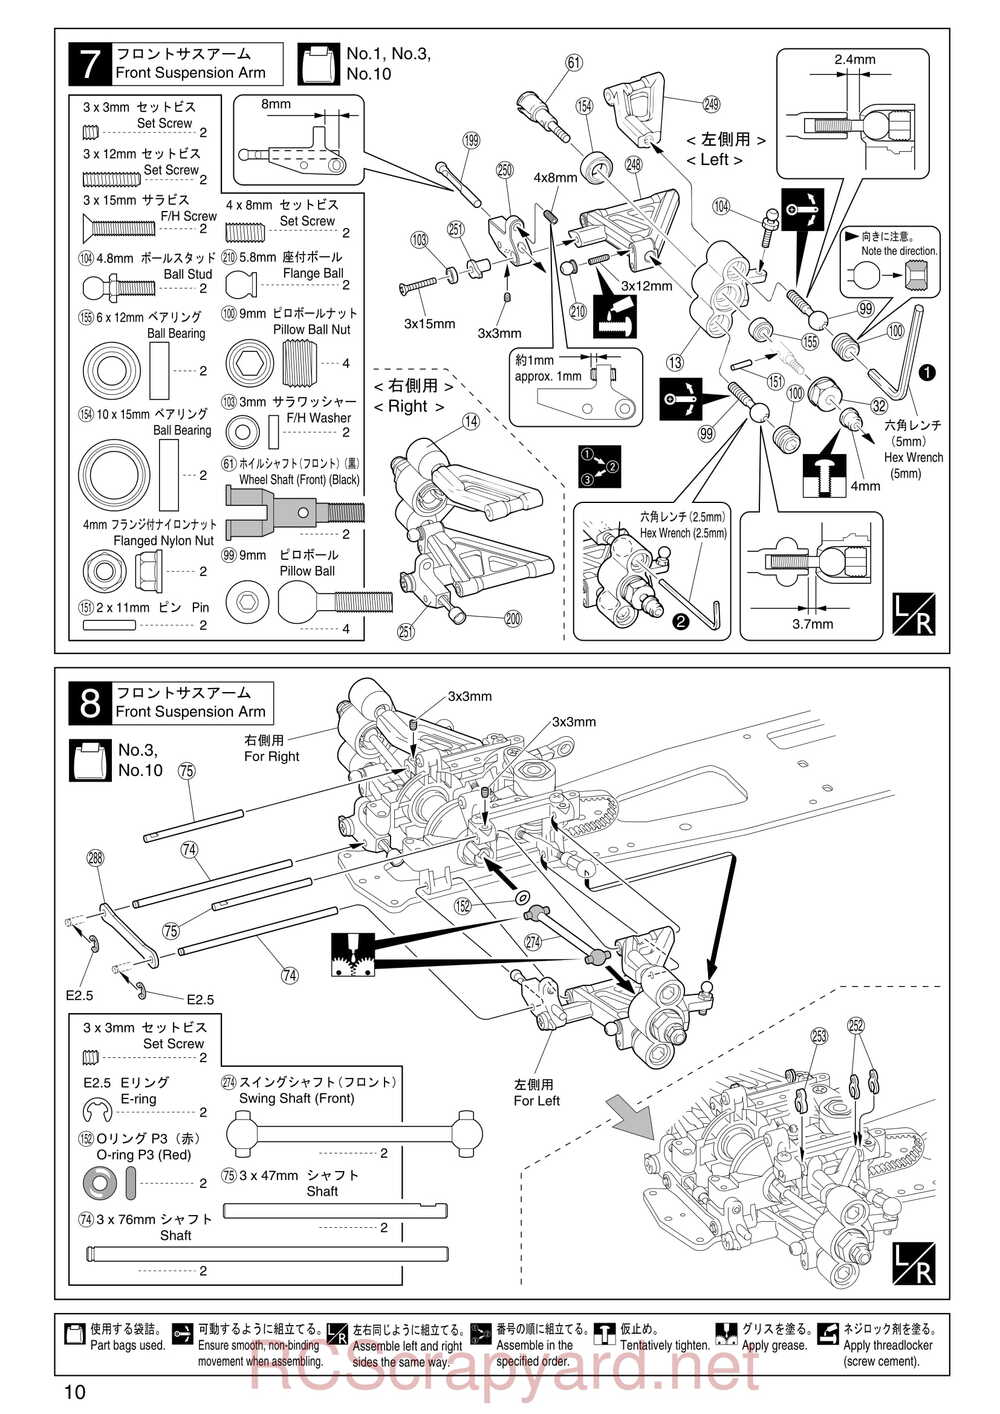 Kyosho - 31255 - V-One RR Evolution - Manual - Page 10